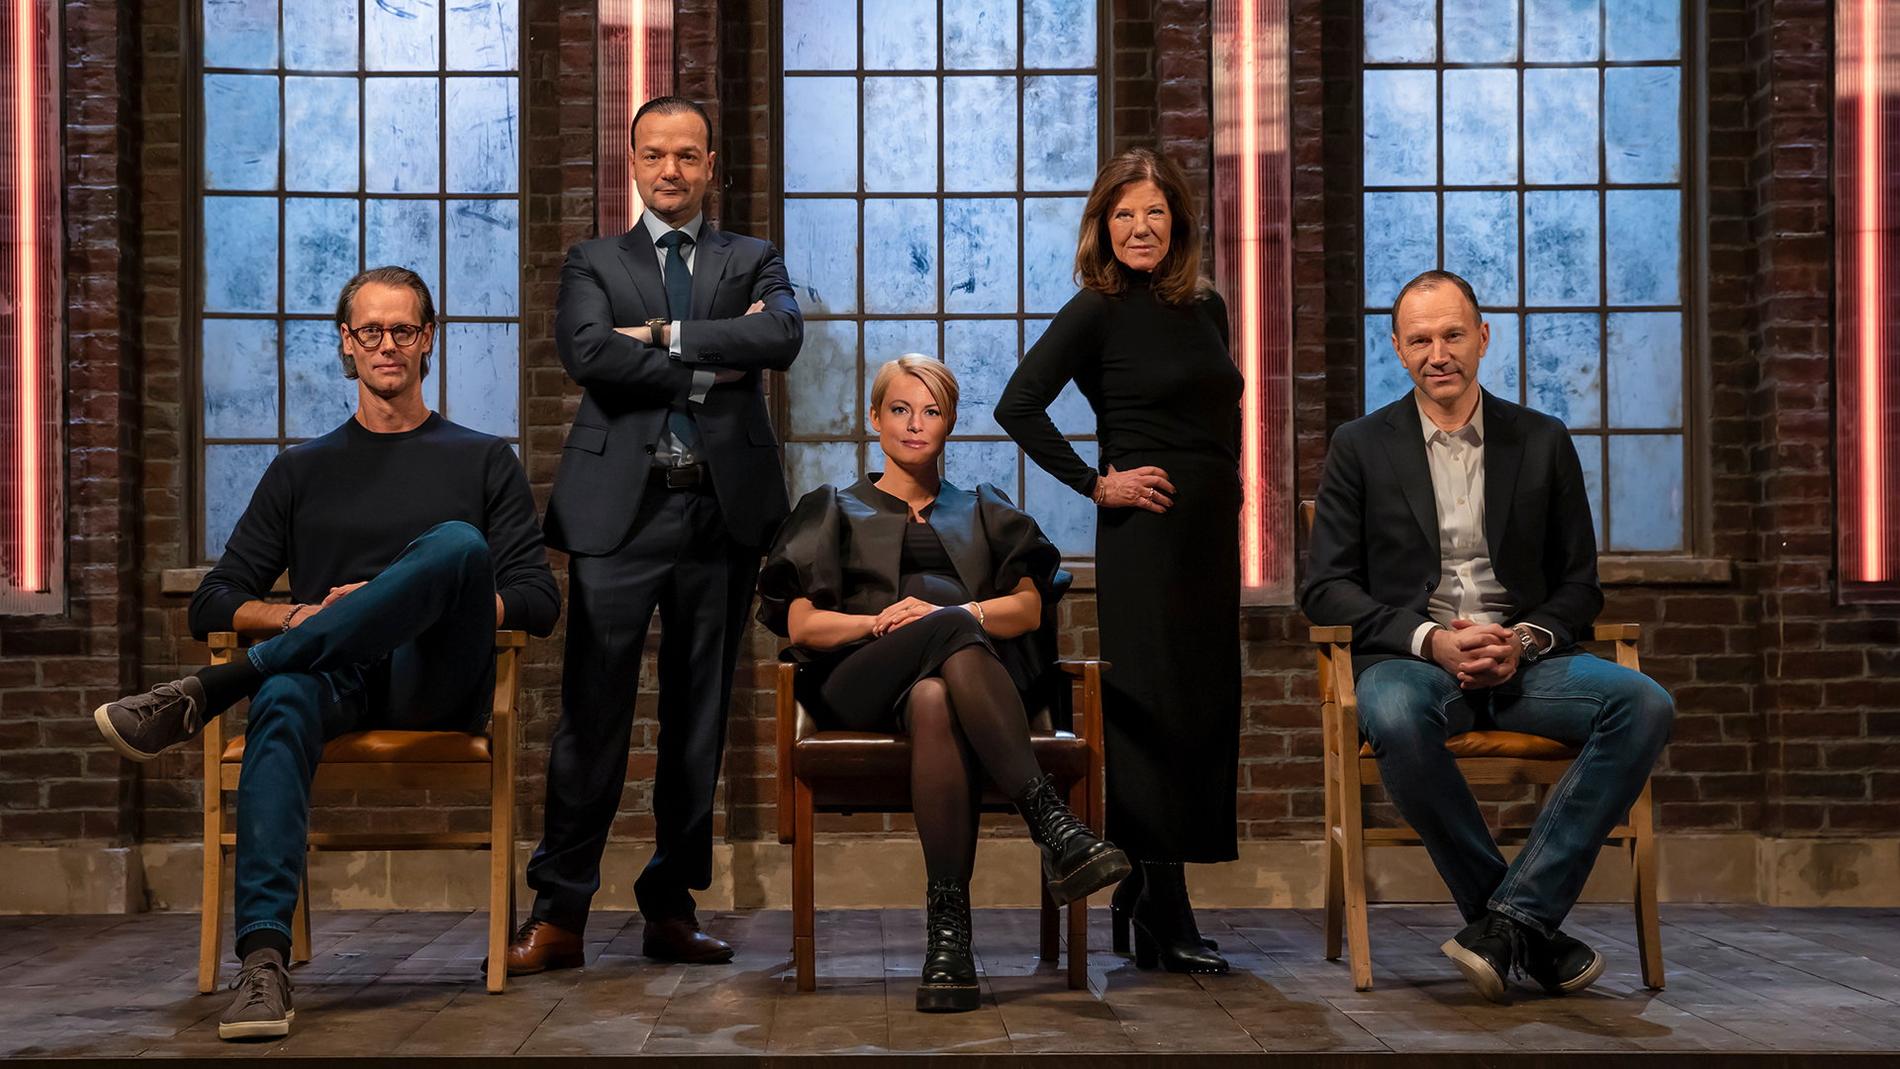 Jacob De Geer, Shervin Razani, Sara Wimmercranz, Lena Apler och Jonas Eriksson är de fem "drakarna" i den nya säsongen av "Draknästet". Pressbild.